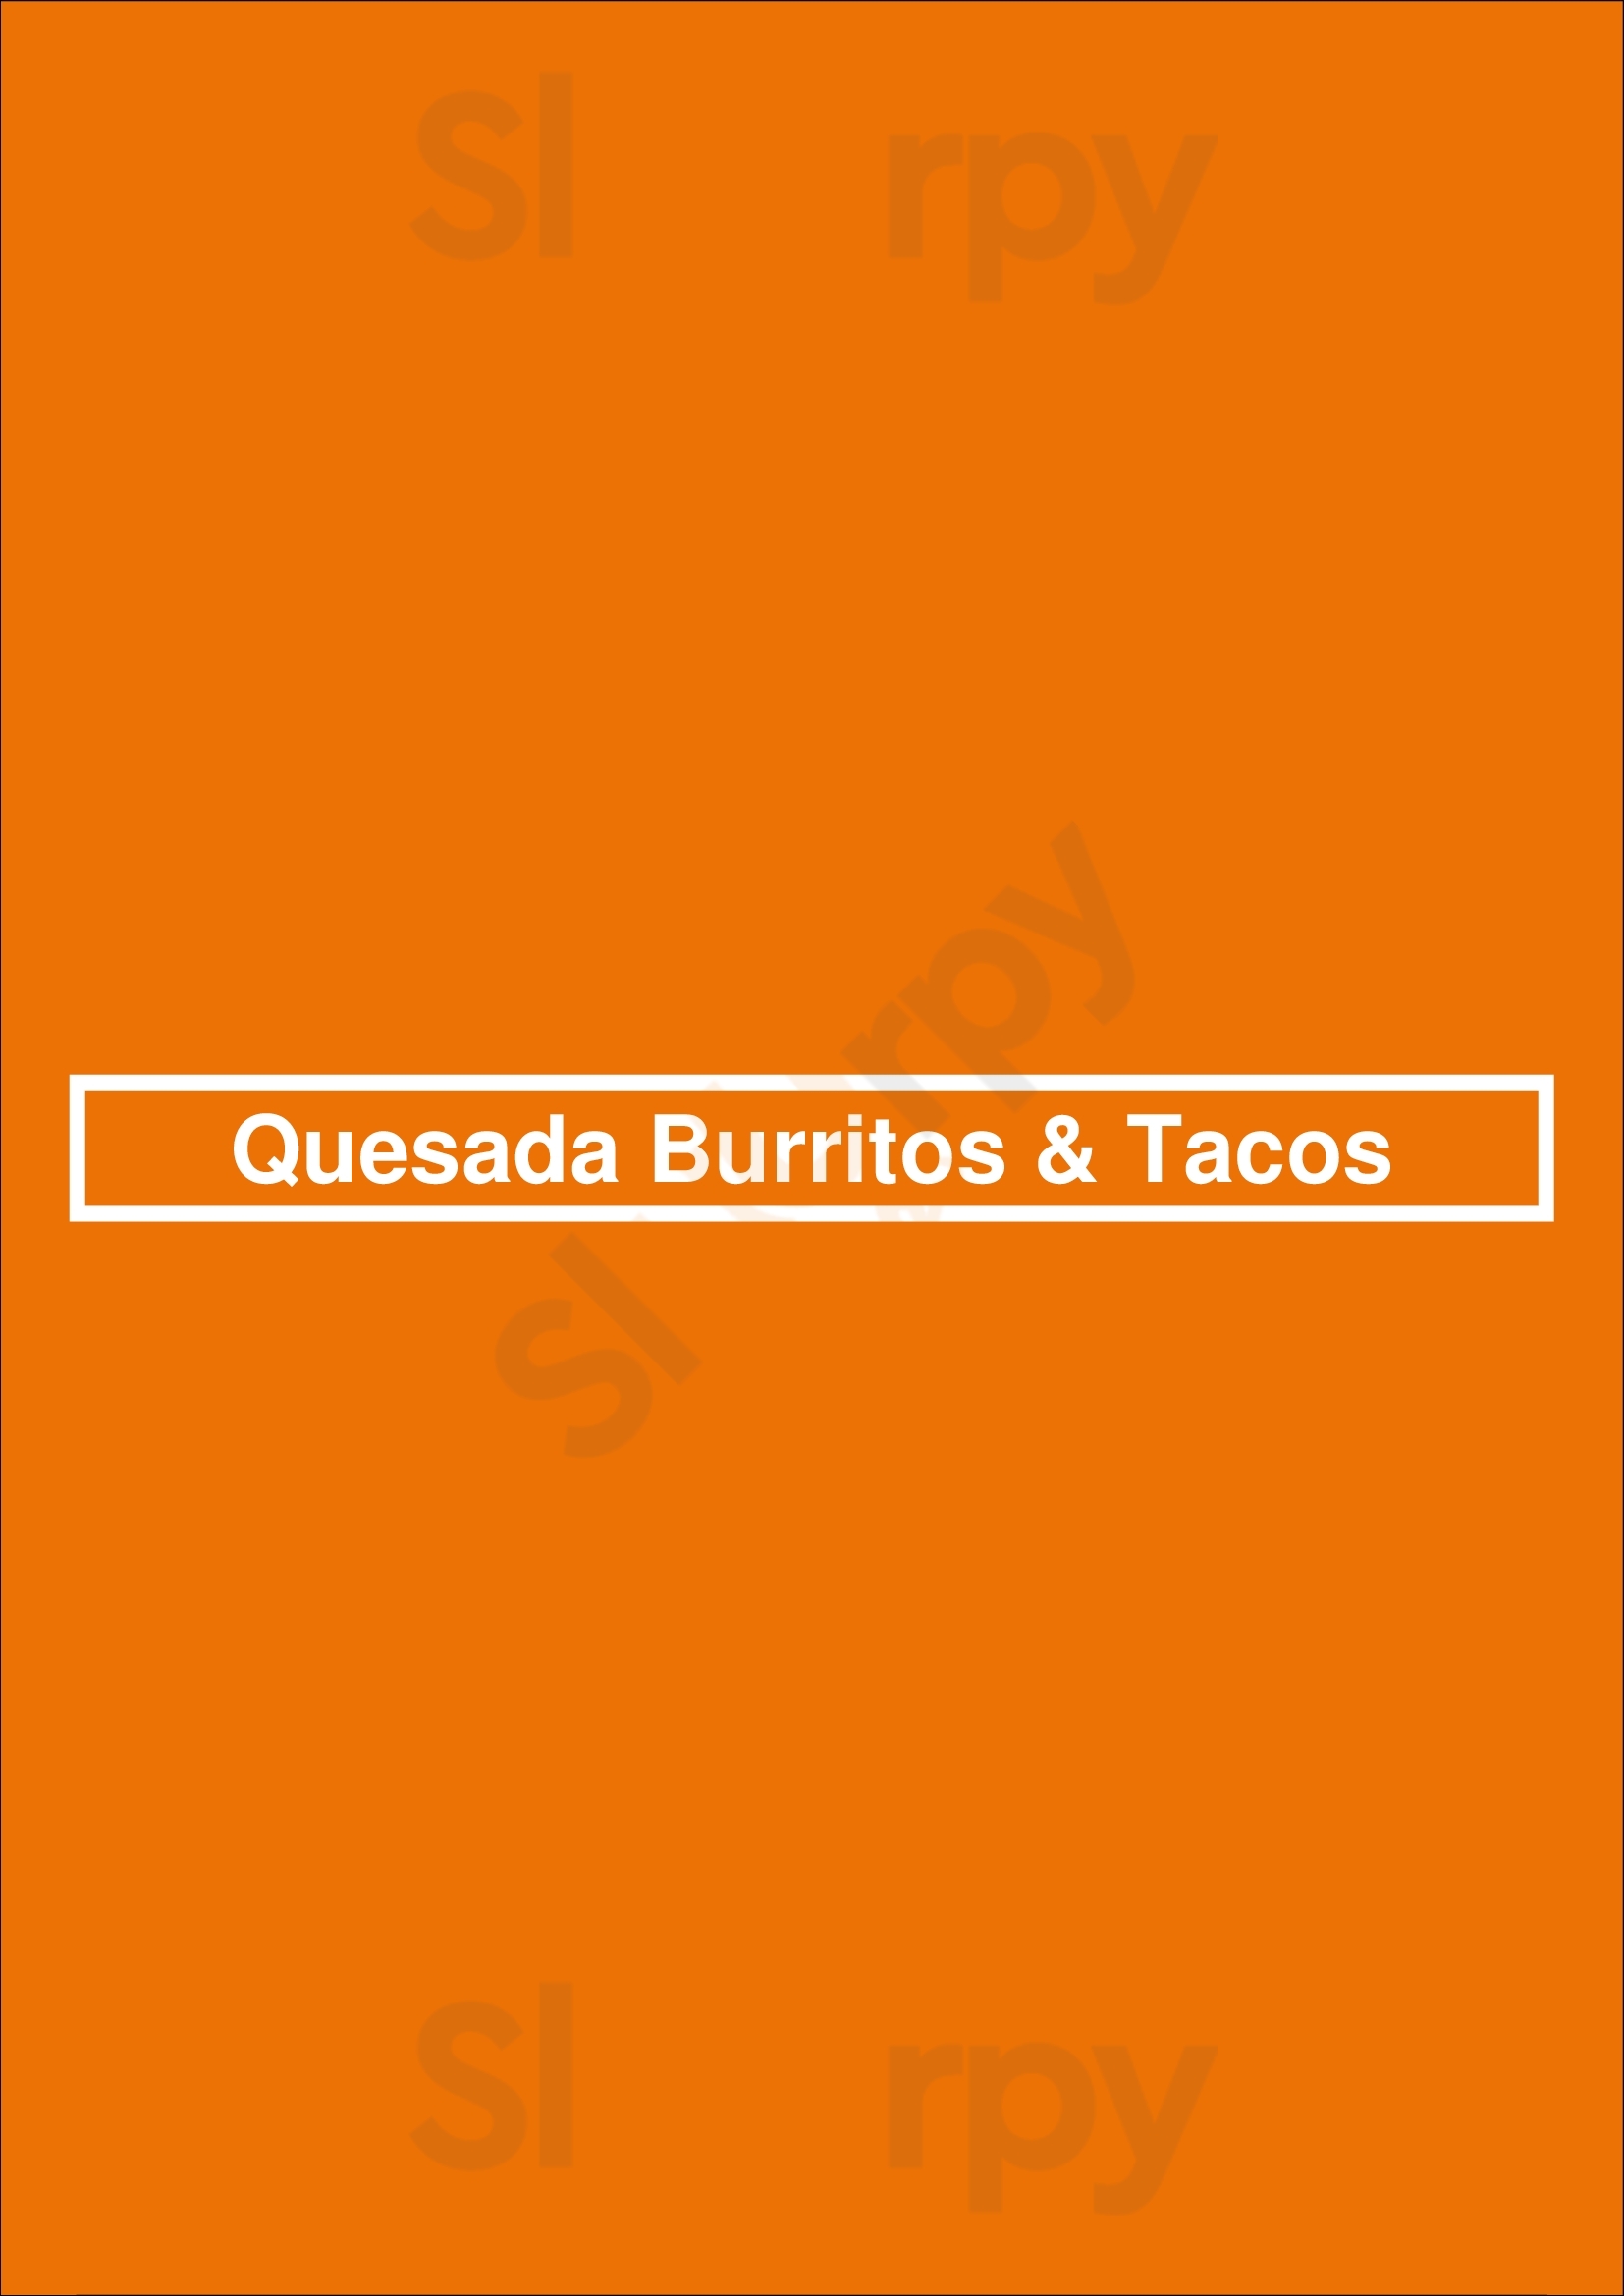 Quesada Burritos & Tacos Oakville Menu - 1